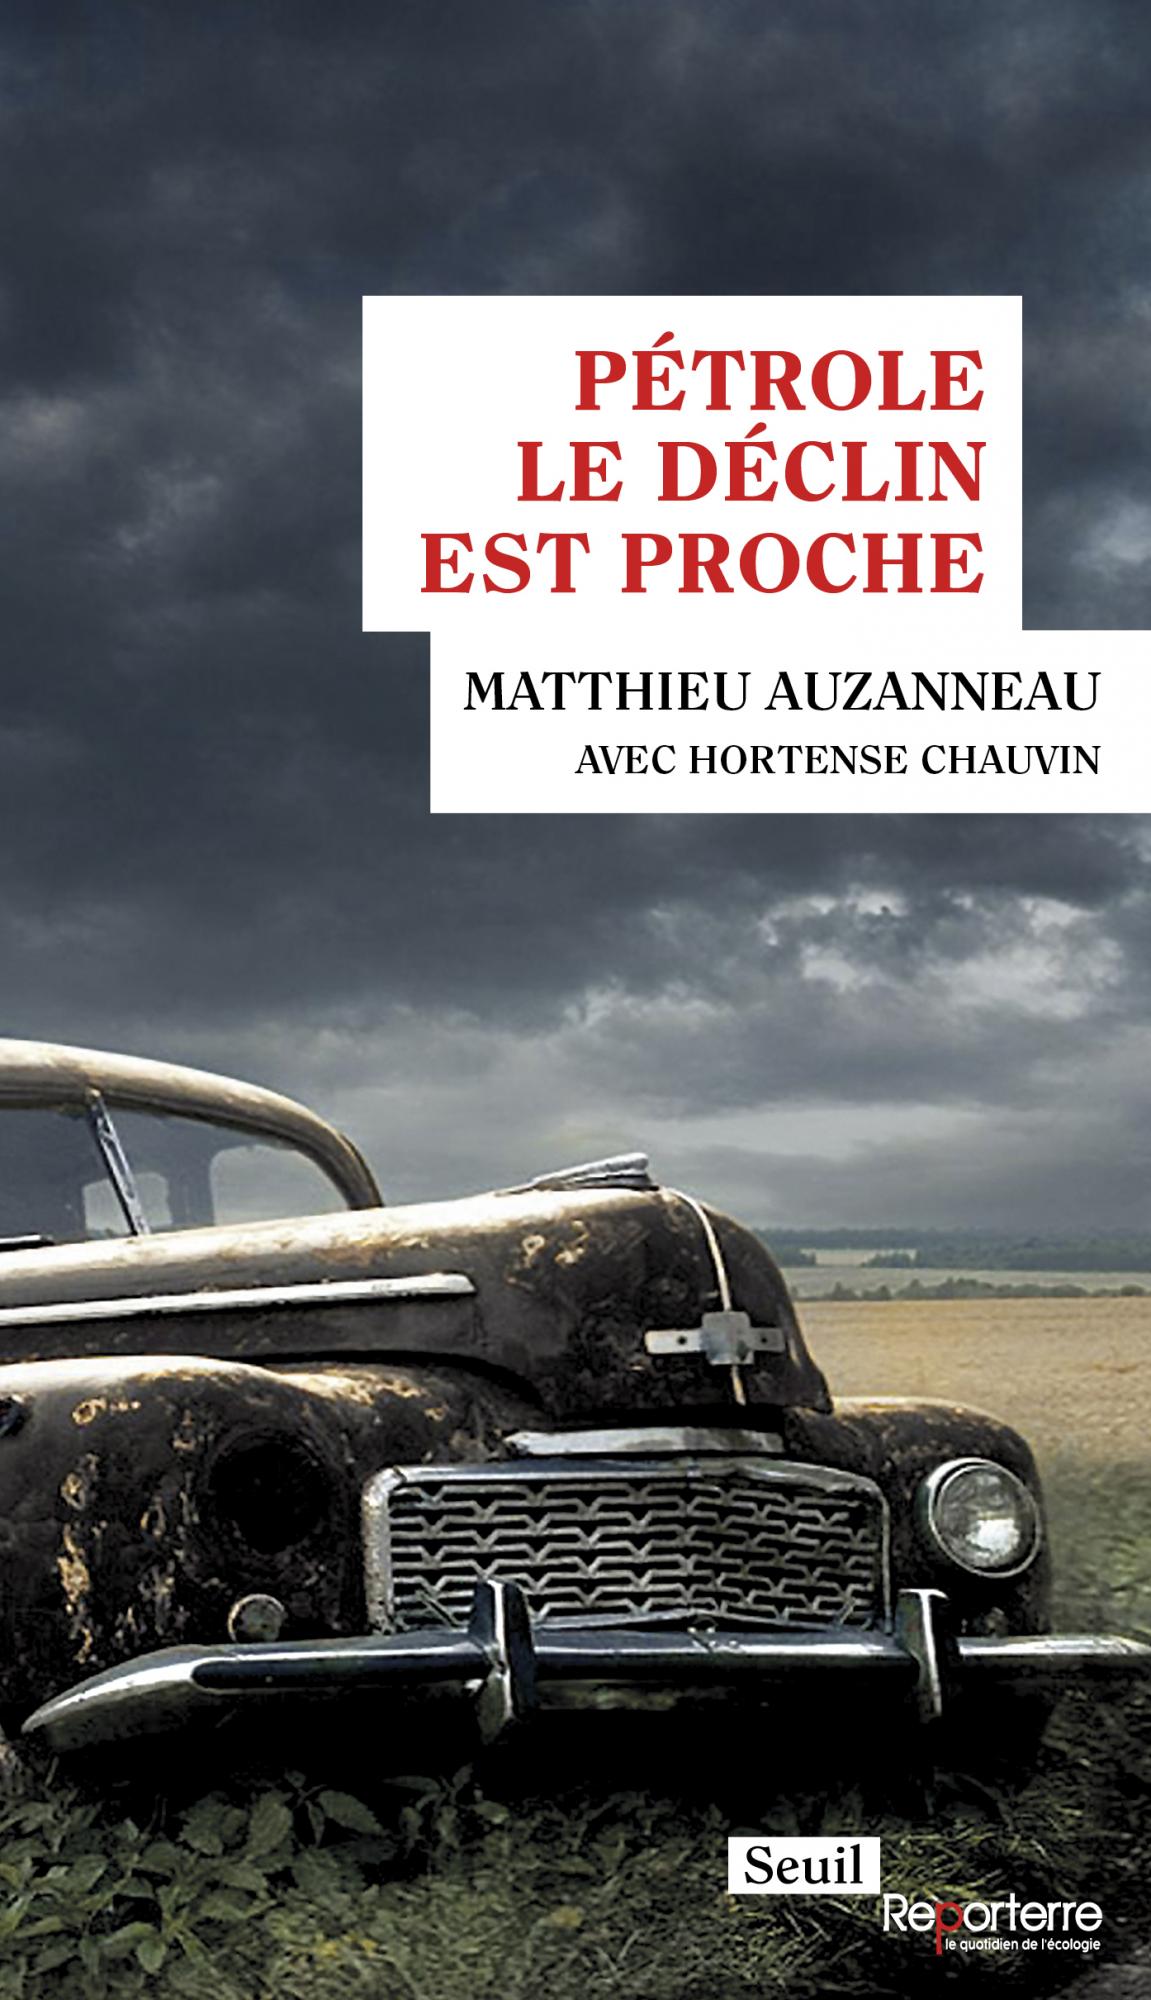 Pétrole, le déclin est proche de Matthieu Auzanneau avec Hortense Chauvin